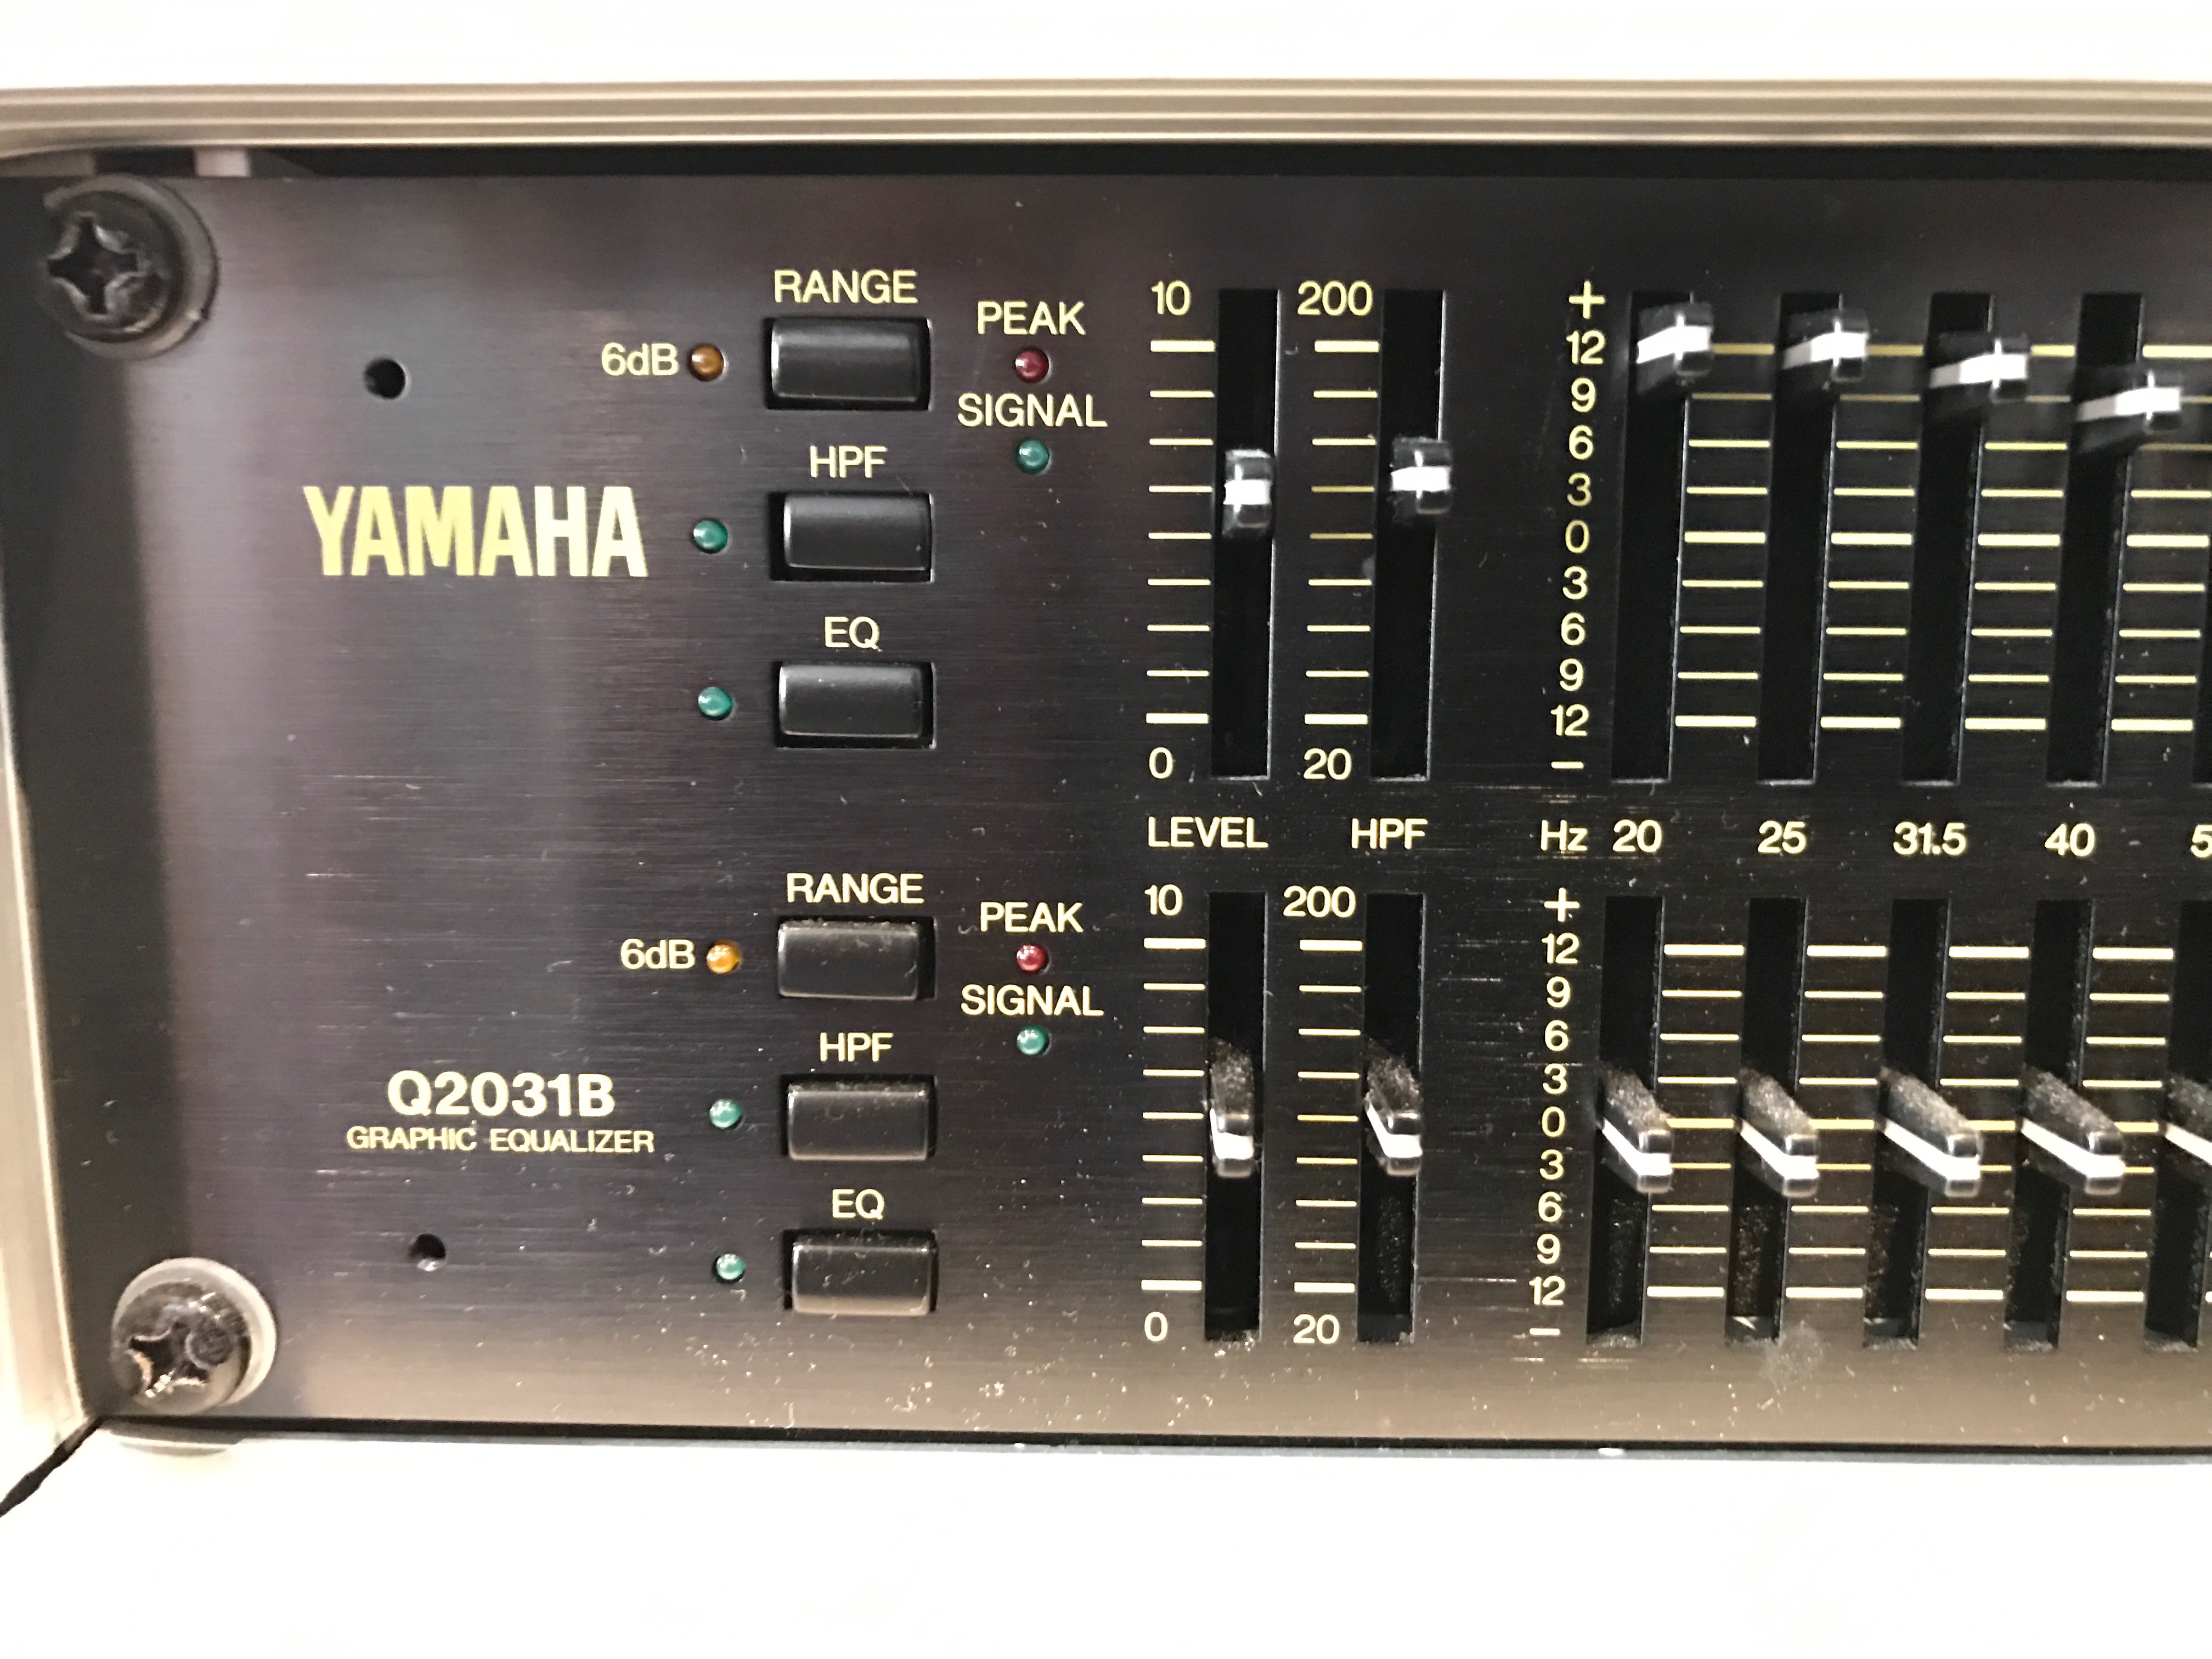 ヤマハ - YAMAHA Q2031B 31バンドグラフィックイコライザー の+